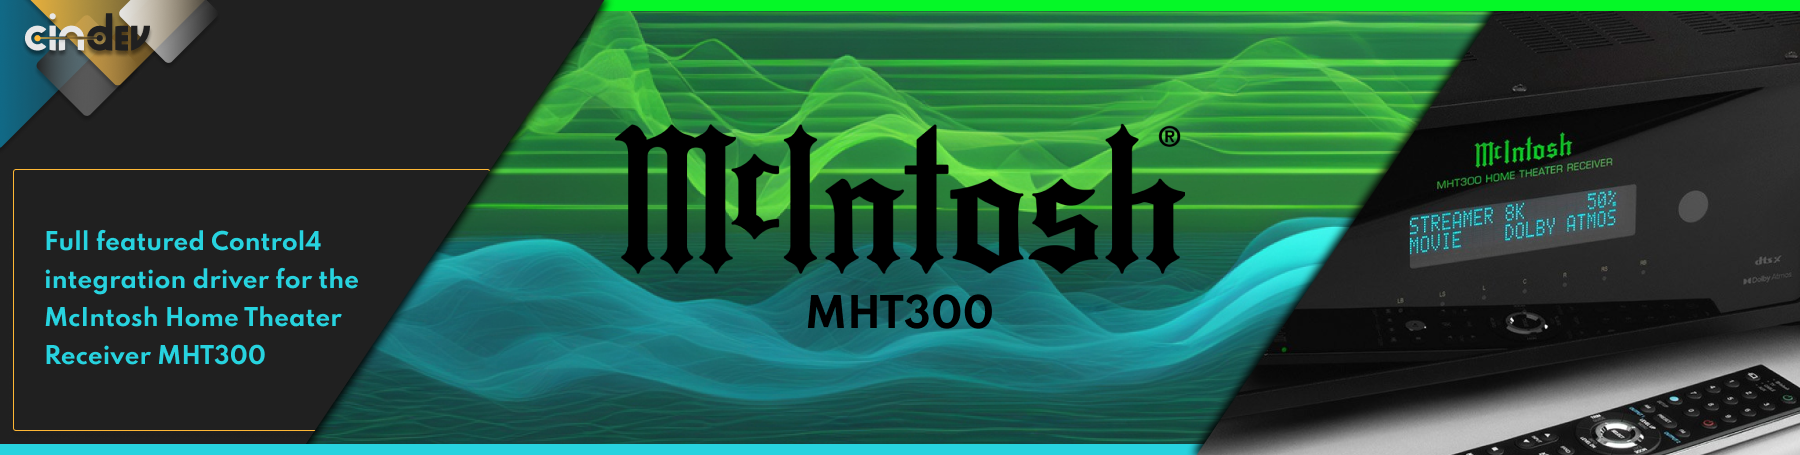 McIntosh_MHT300%5BBanner%5D.png?1713197790012